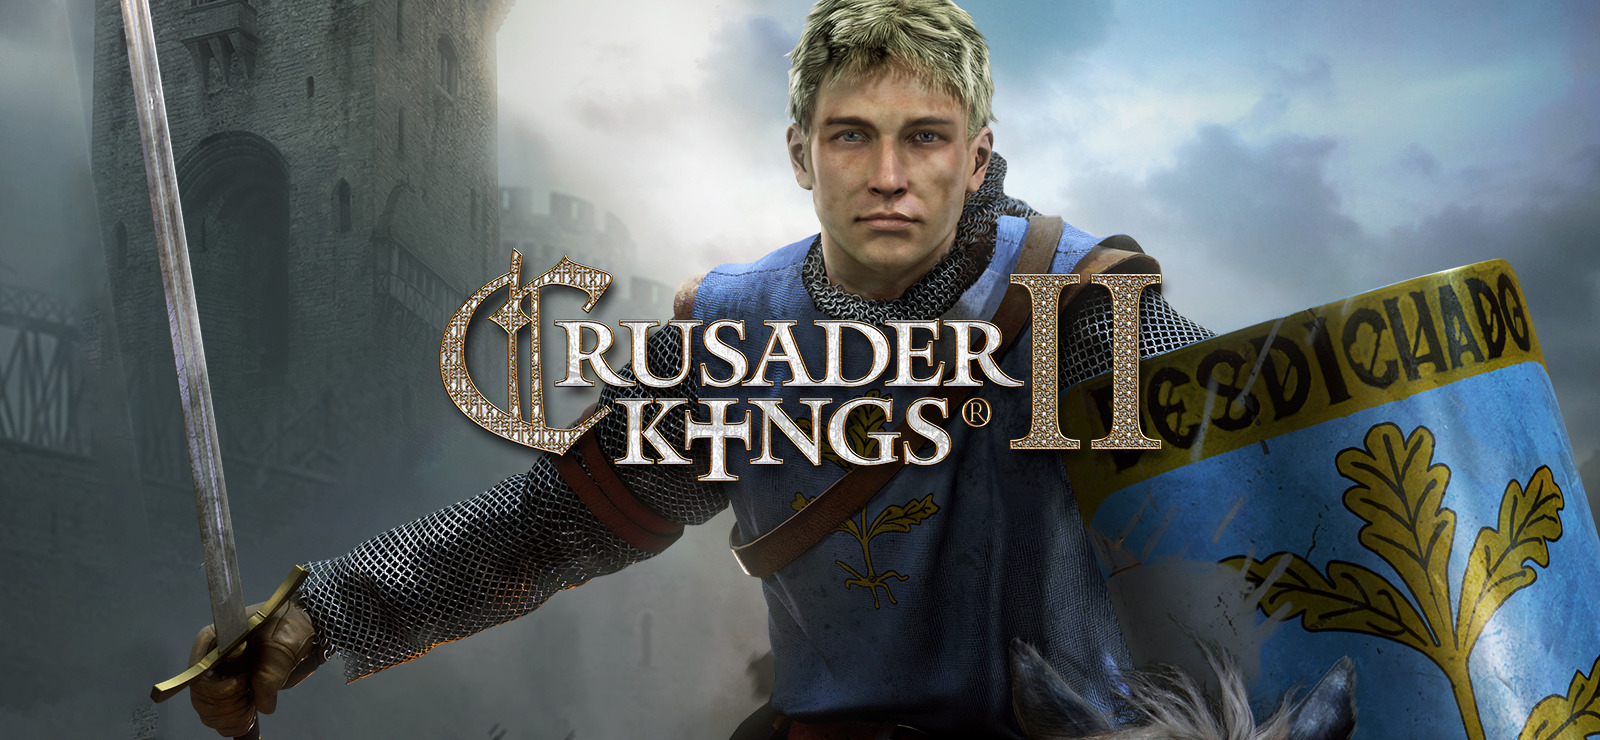 Sunset Invasion - Crusader Kings II Wiki